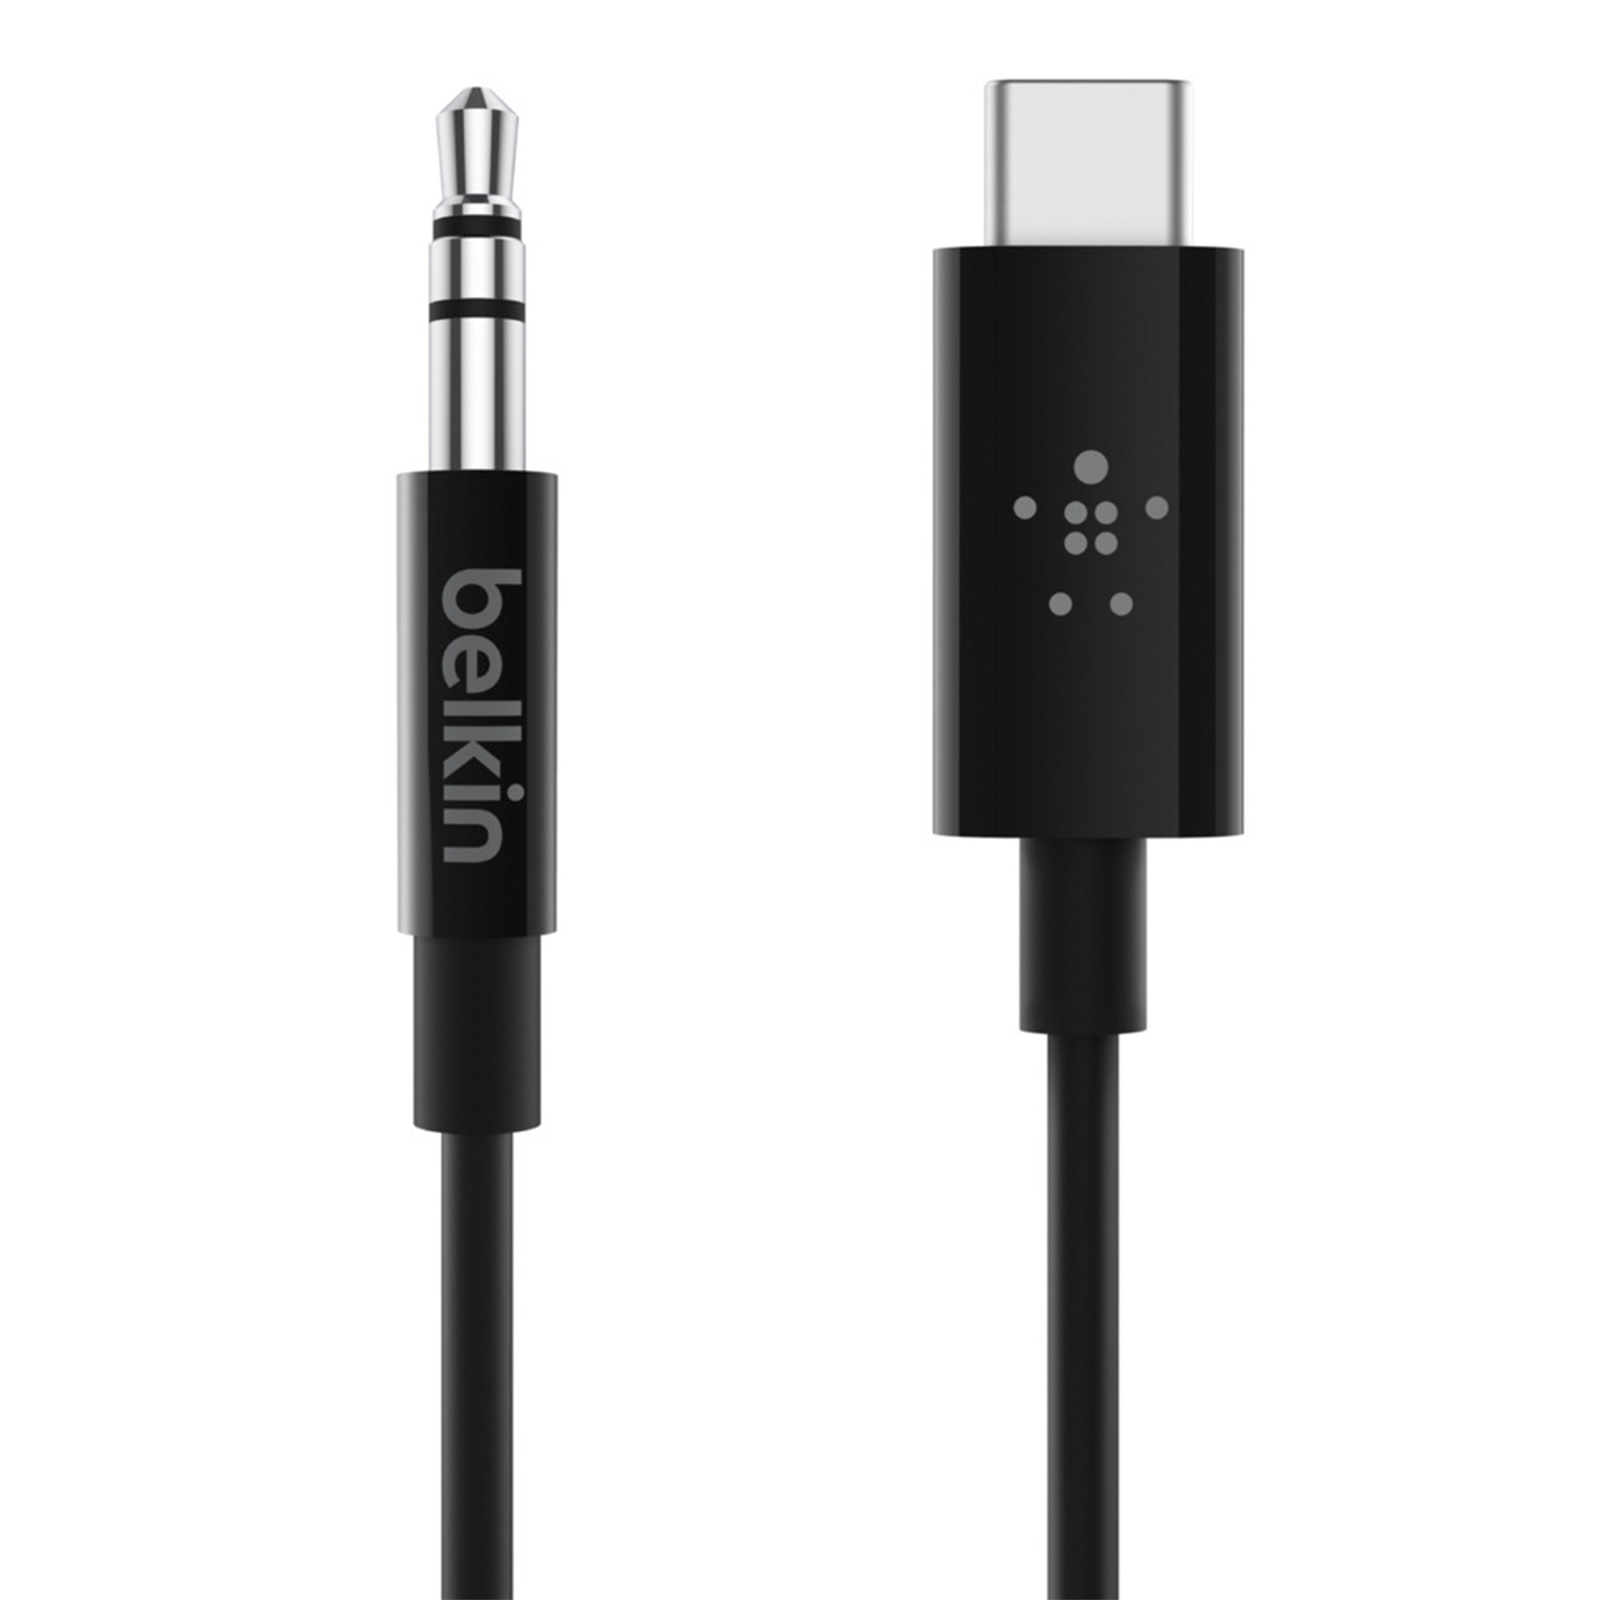 90 / 3.5mm Klinke, BELKIN USB-C Audiokabel, cm